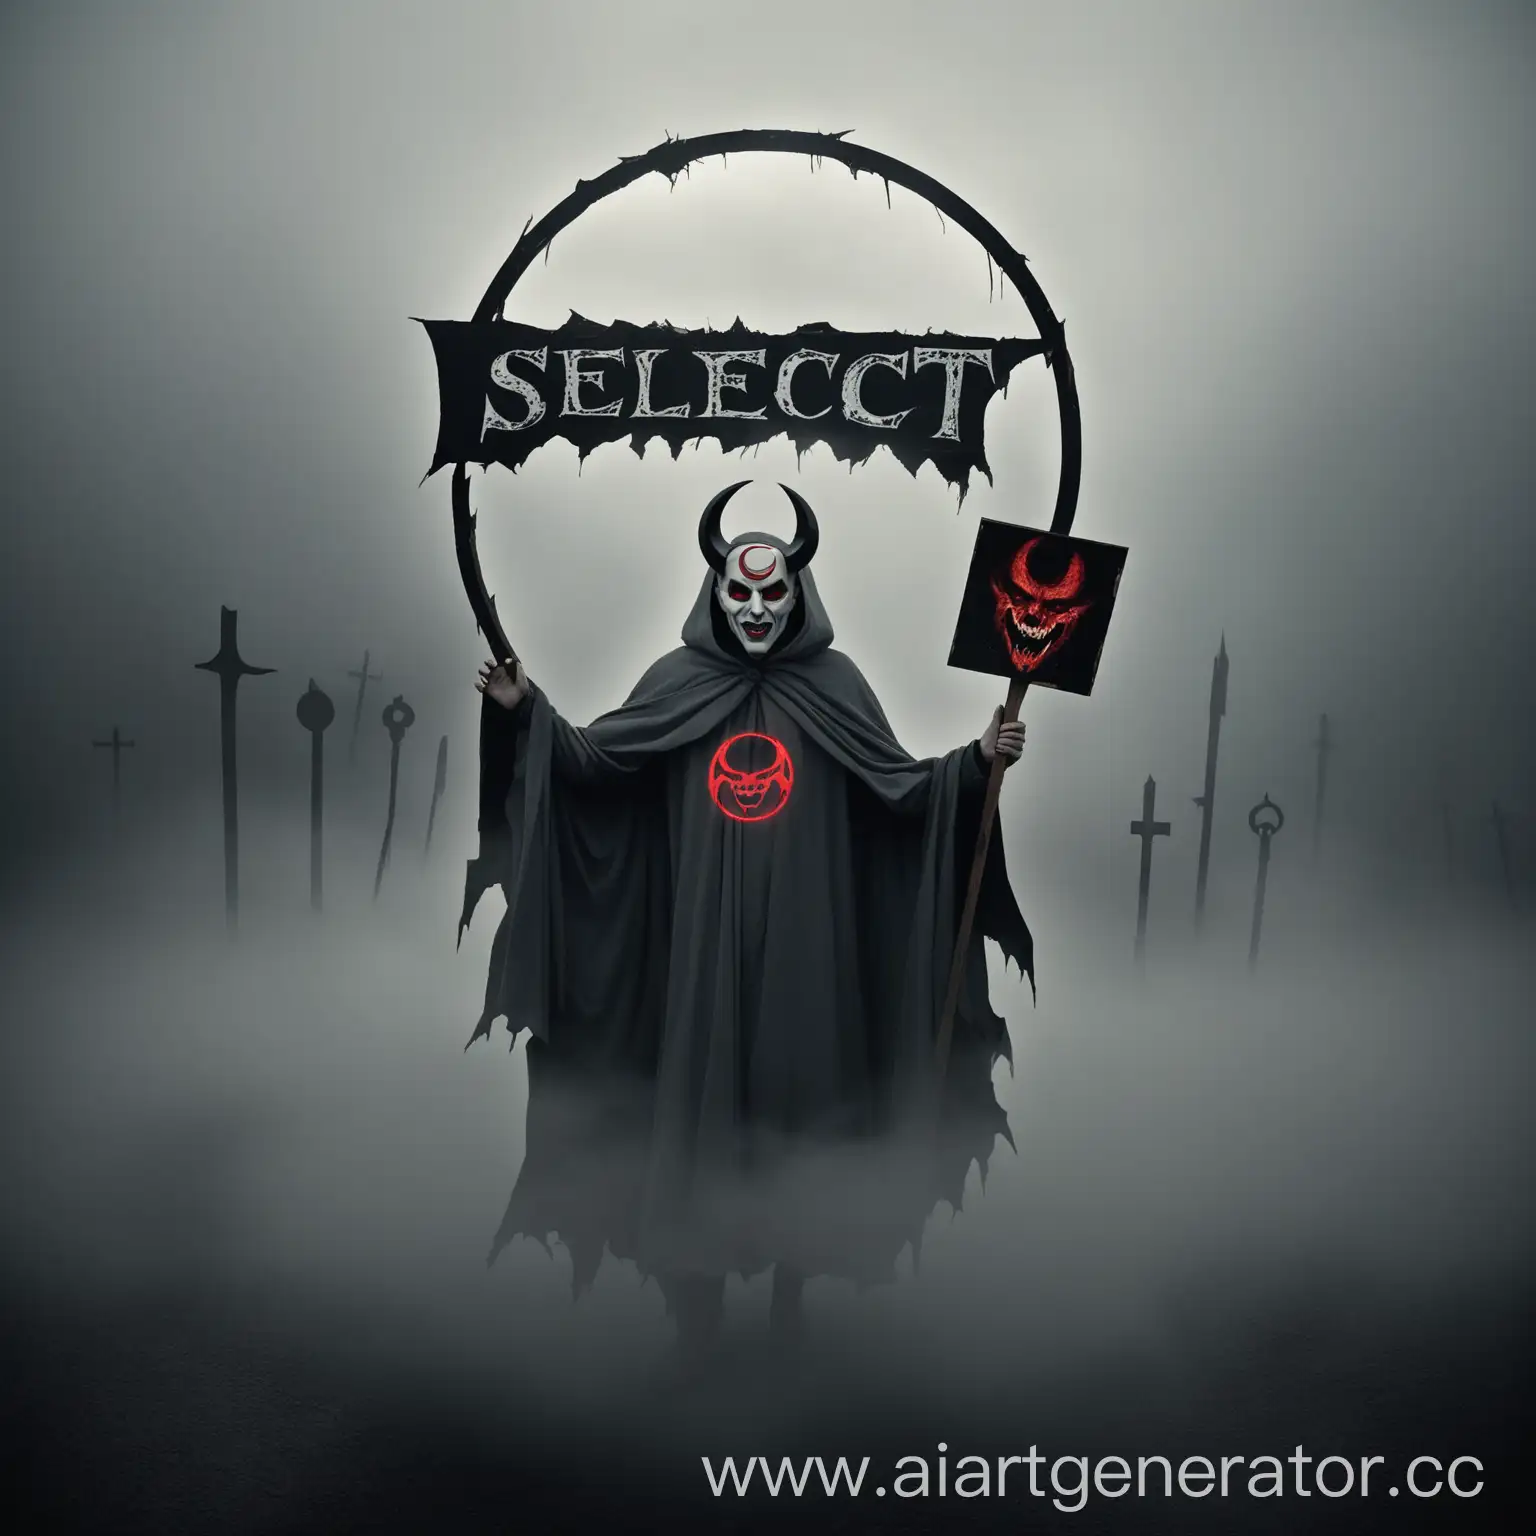 Человек в сером потрепаном балахоне с овальной маской на которой изображен круг сатаны,держит в руках табличку с надписью на табличке  Select,вокруг него серый туман , на табличке написано "SELECT"